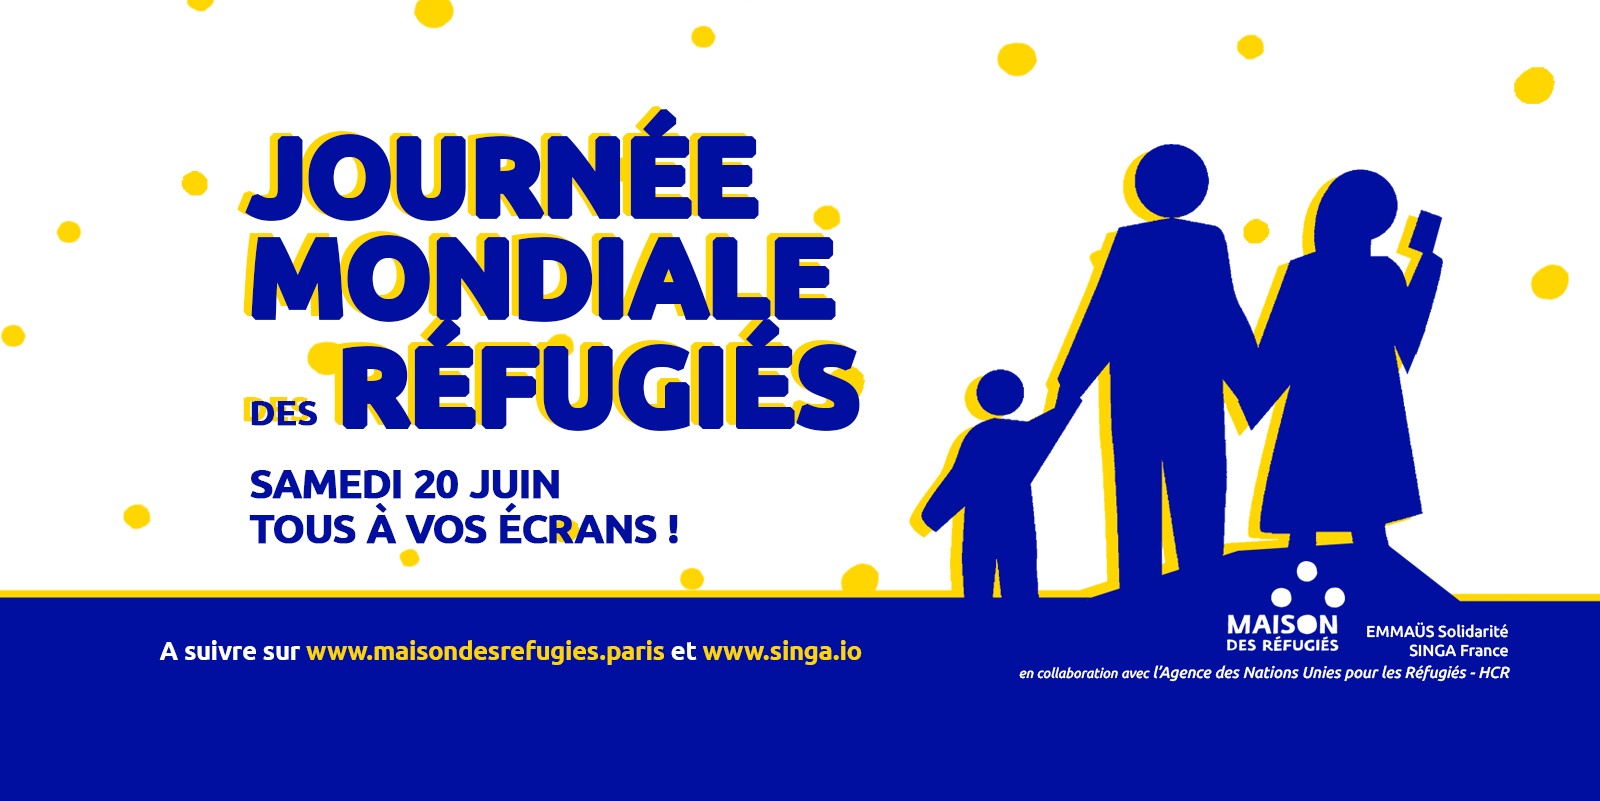 La Journée mondiale des réfugiés est en ligne